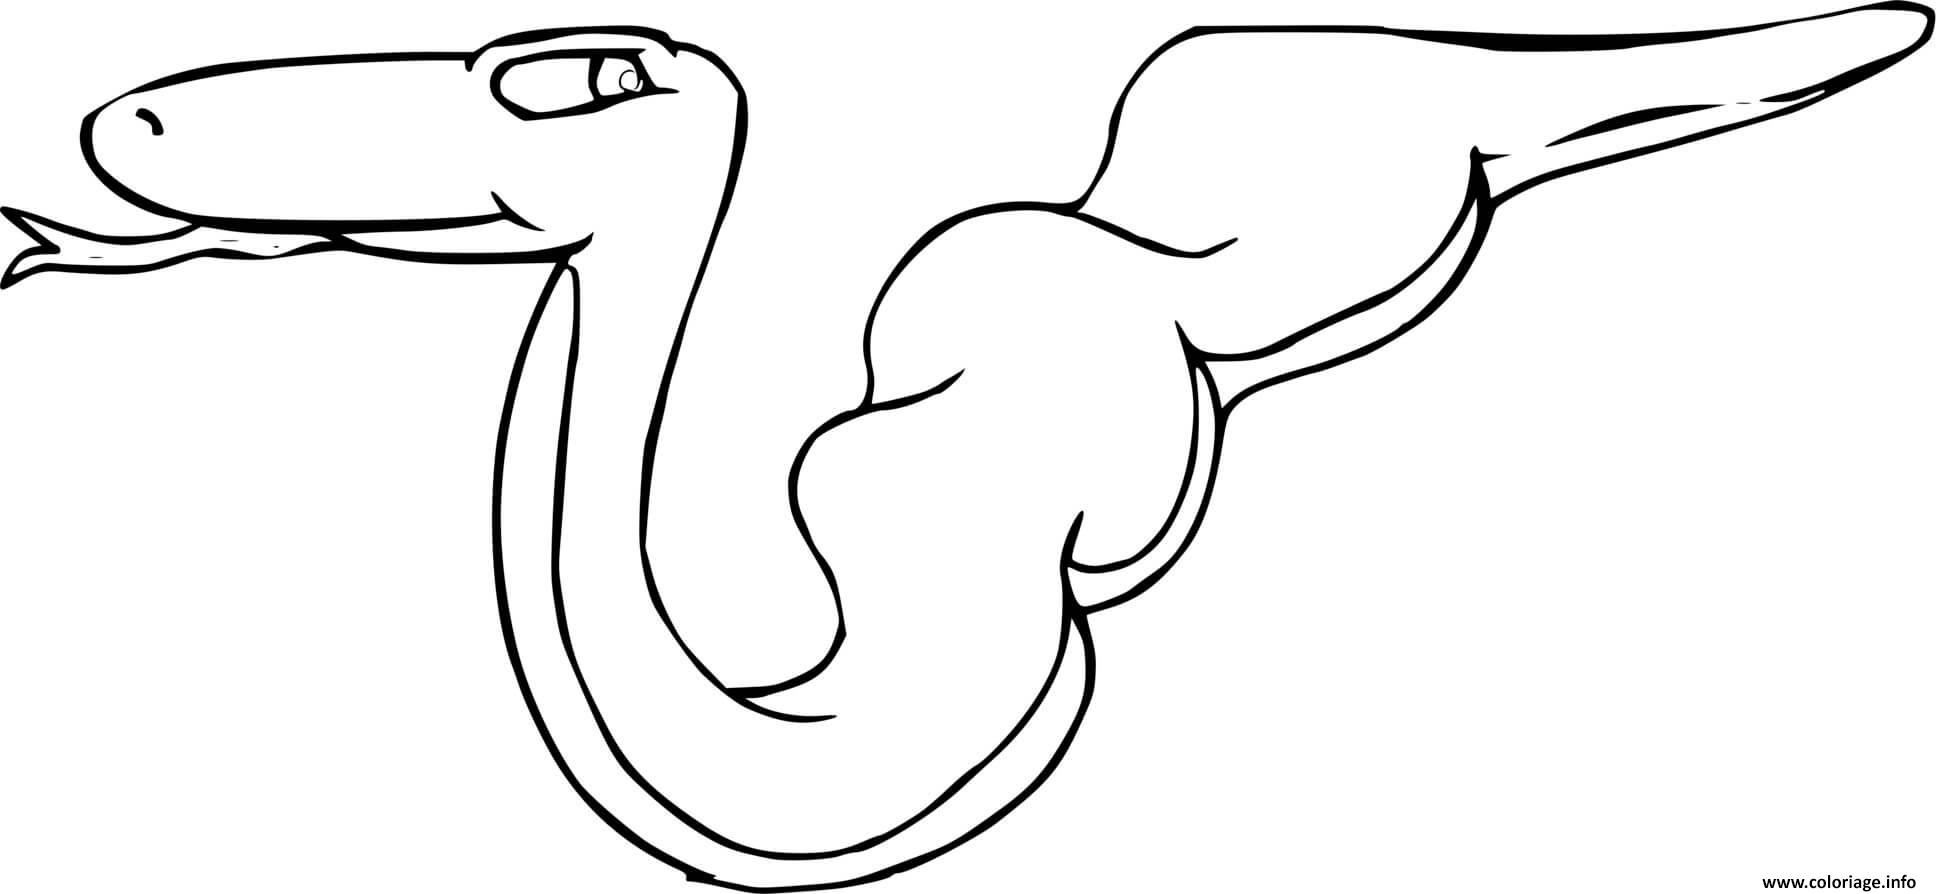 Dessin serpent avec un gros ventre Coloriage Gratuit à Imprimer